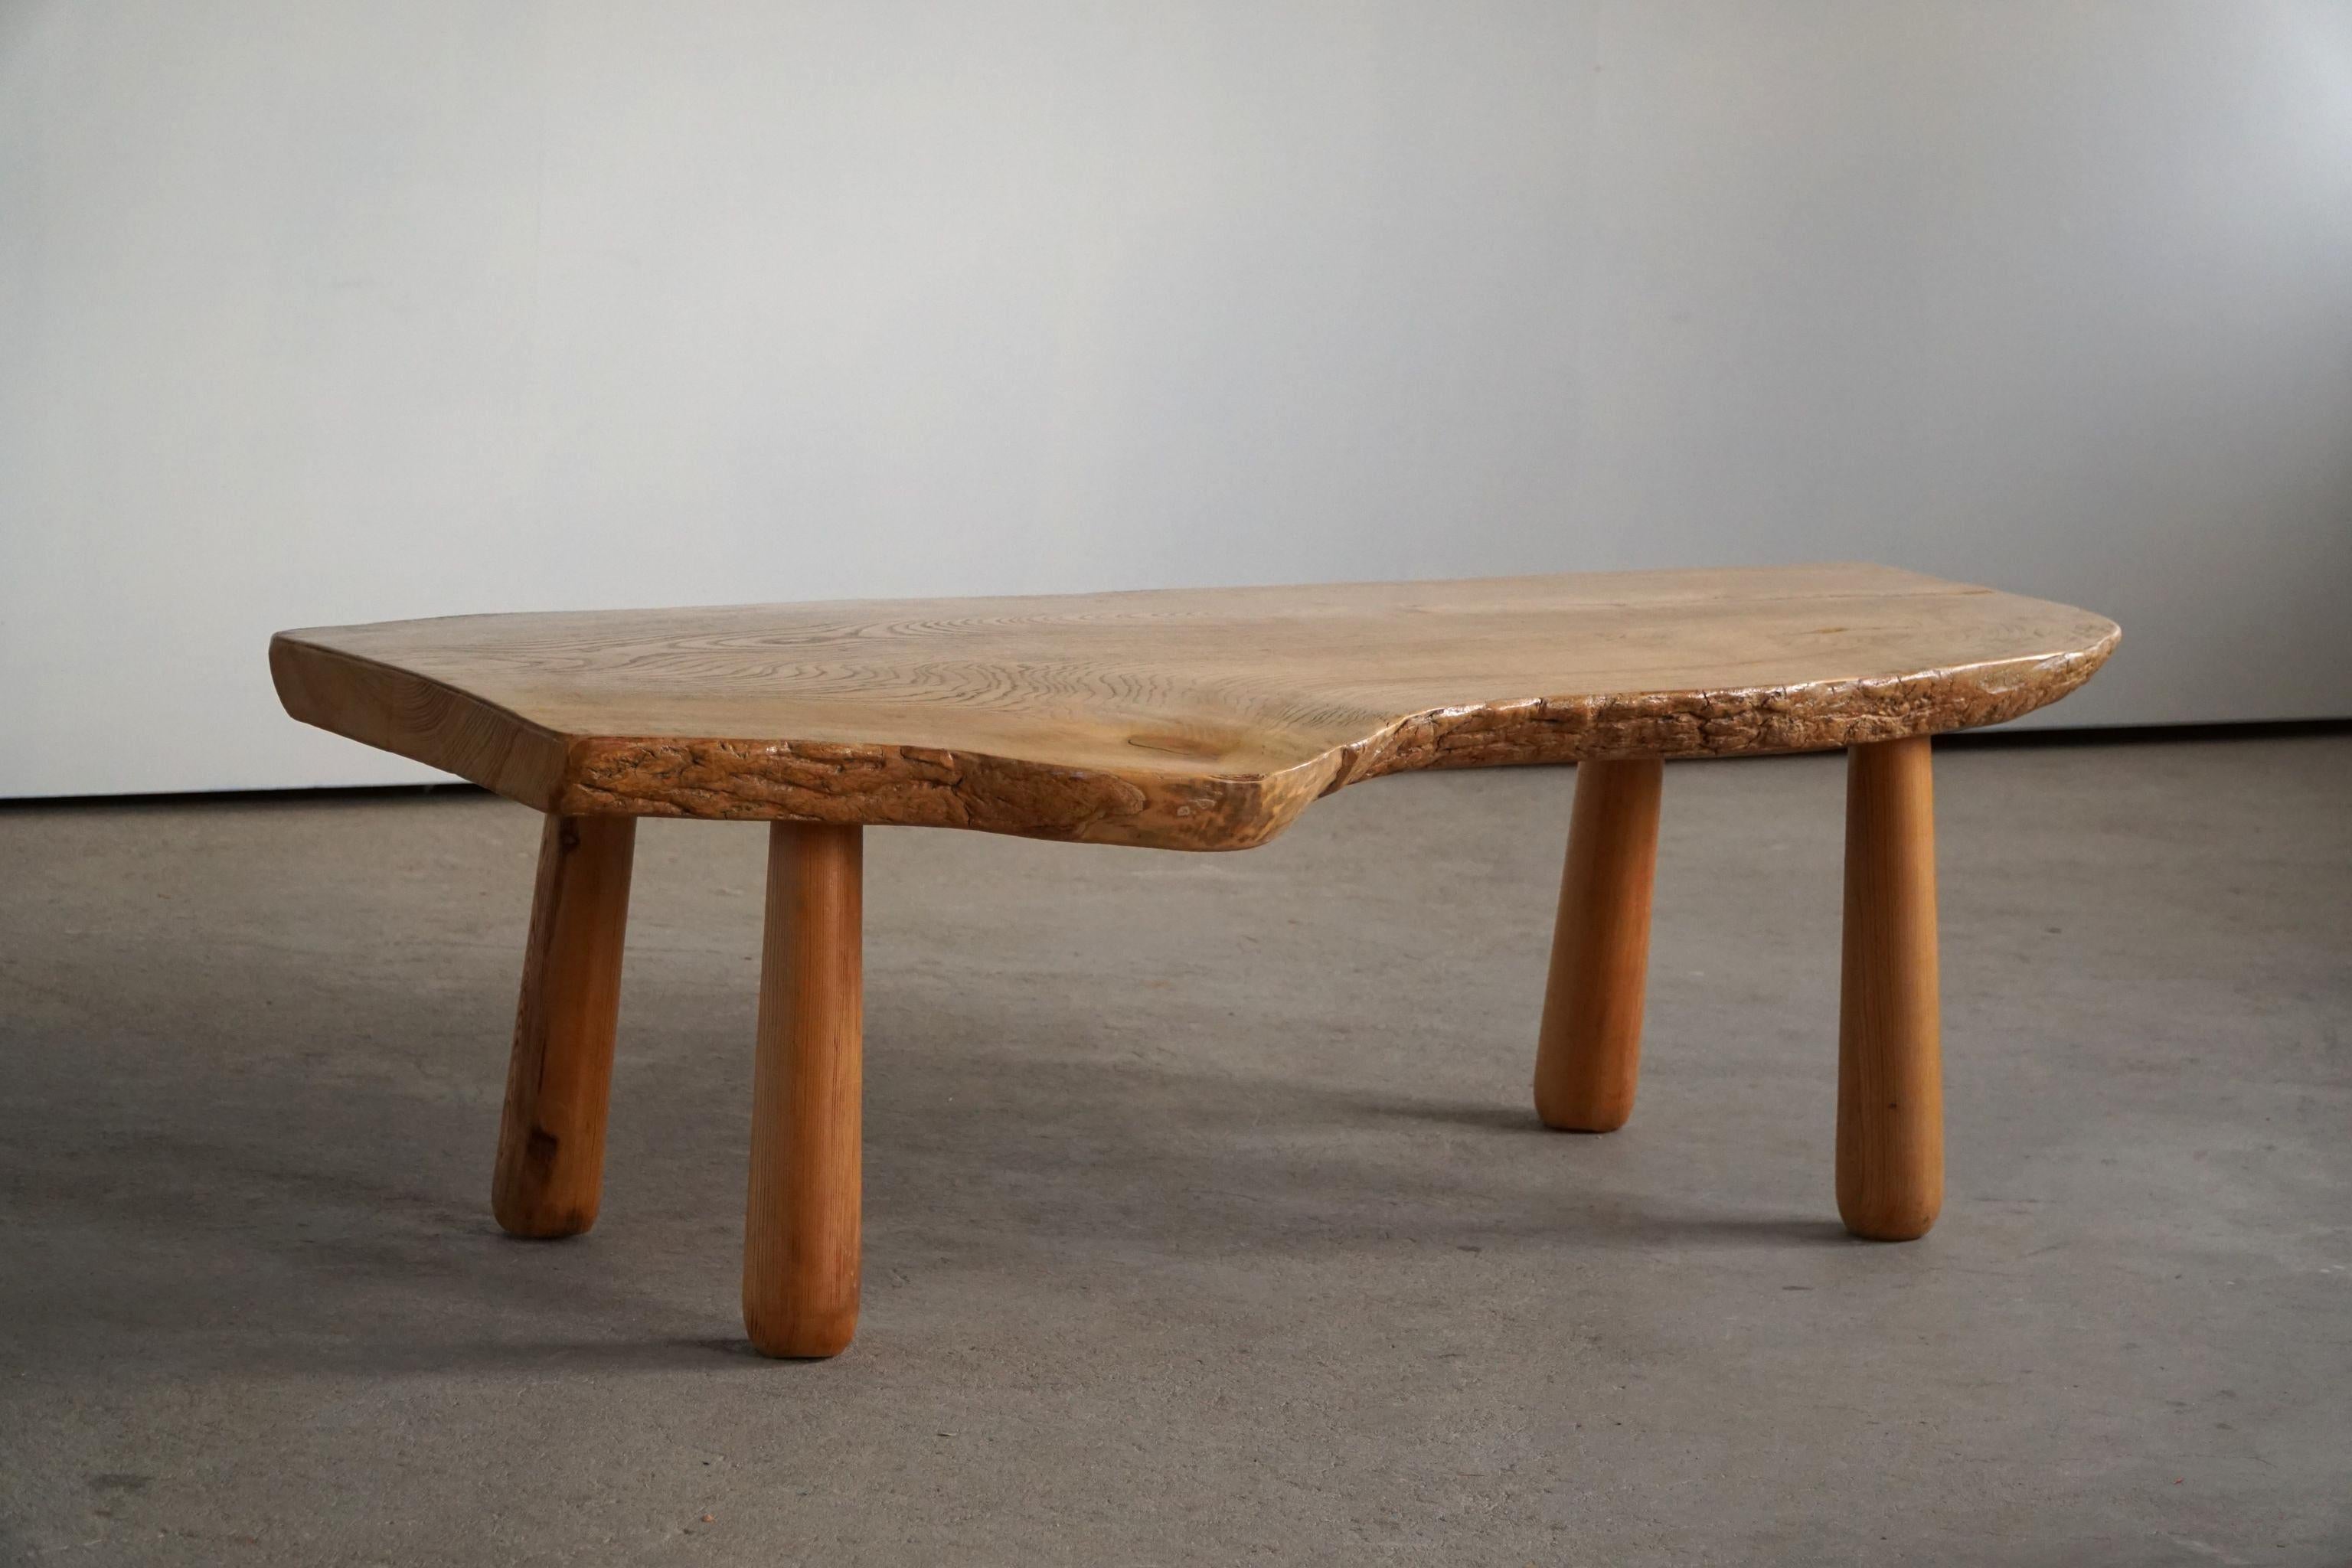 20th Century, Organic Table in Pine with Club Legs, Wabi Sabi, Swedish Modern 1